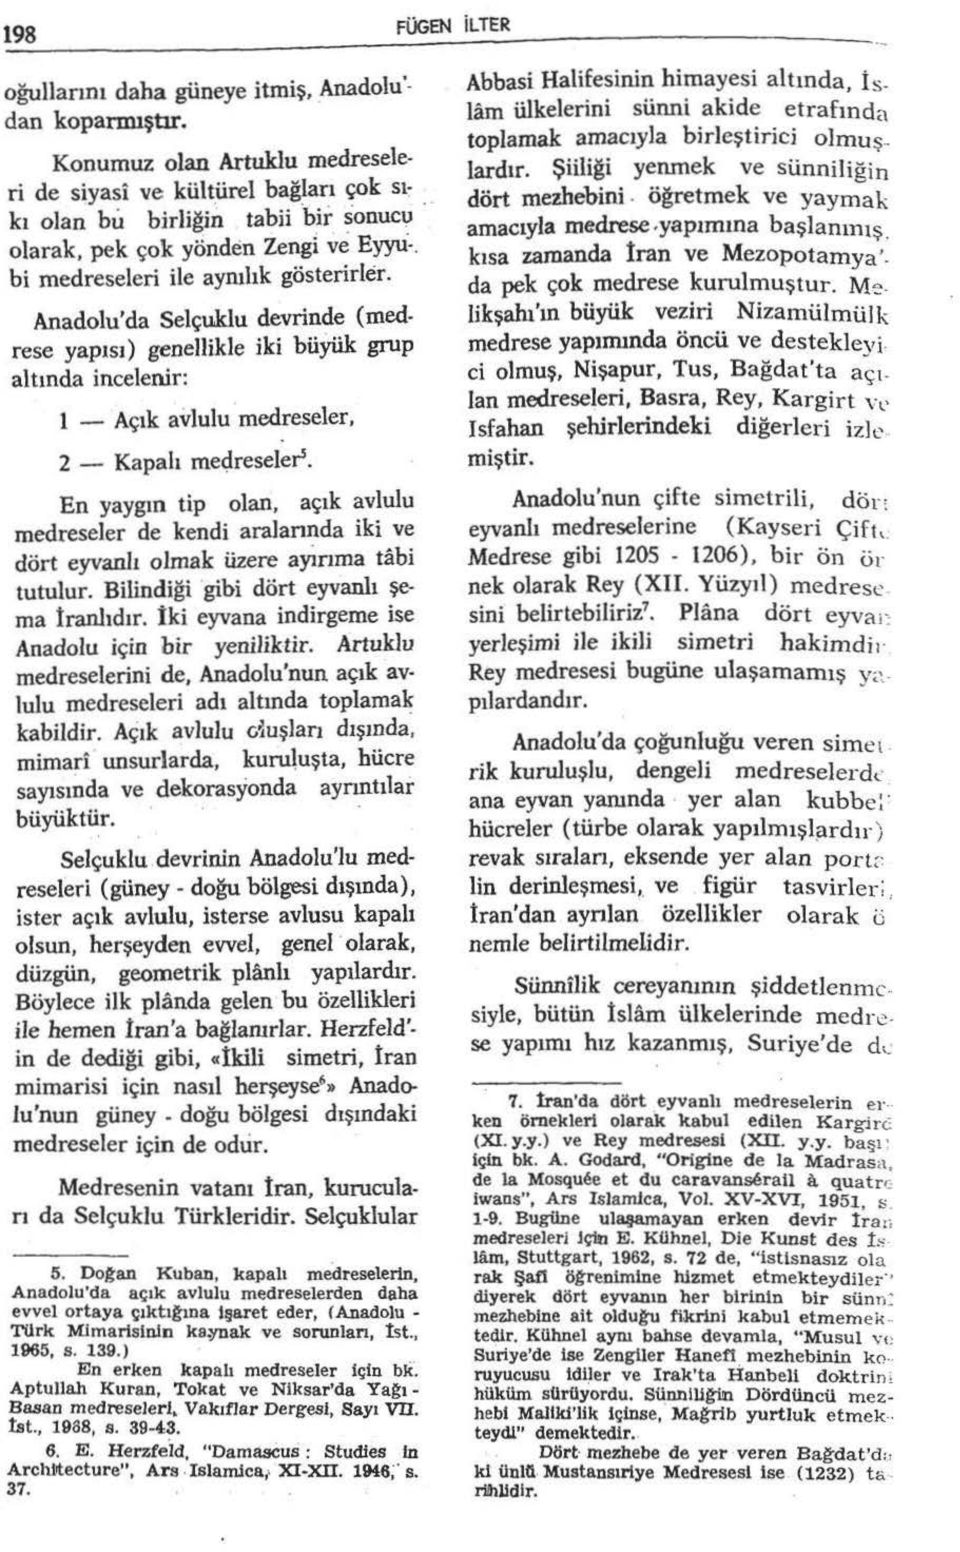 Anadolu'da Selçuklu devrinde (medrese yapısı) genellikle iki büyük grup altında incelenir: 1 - Açık aviulu medreseler, 2- Kapalı me~reseler.